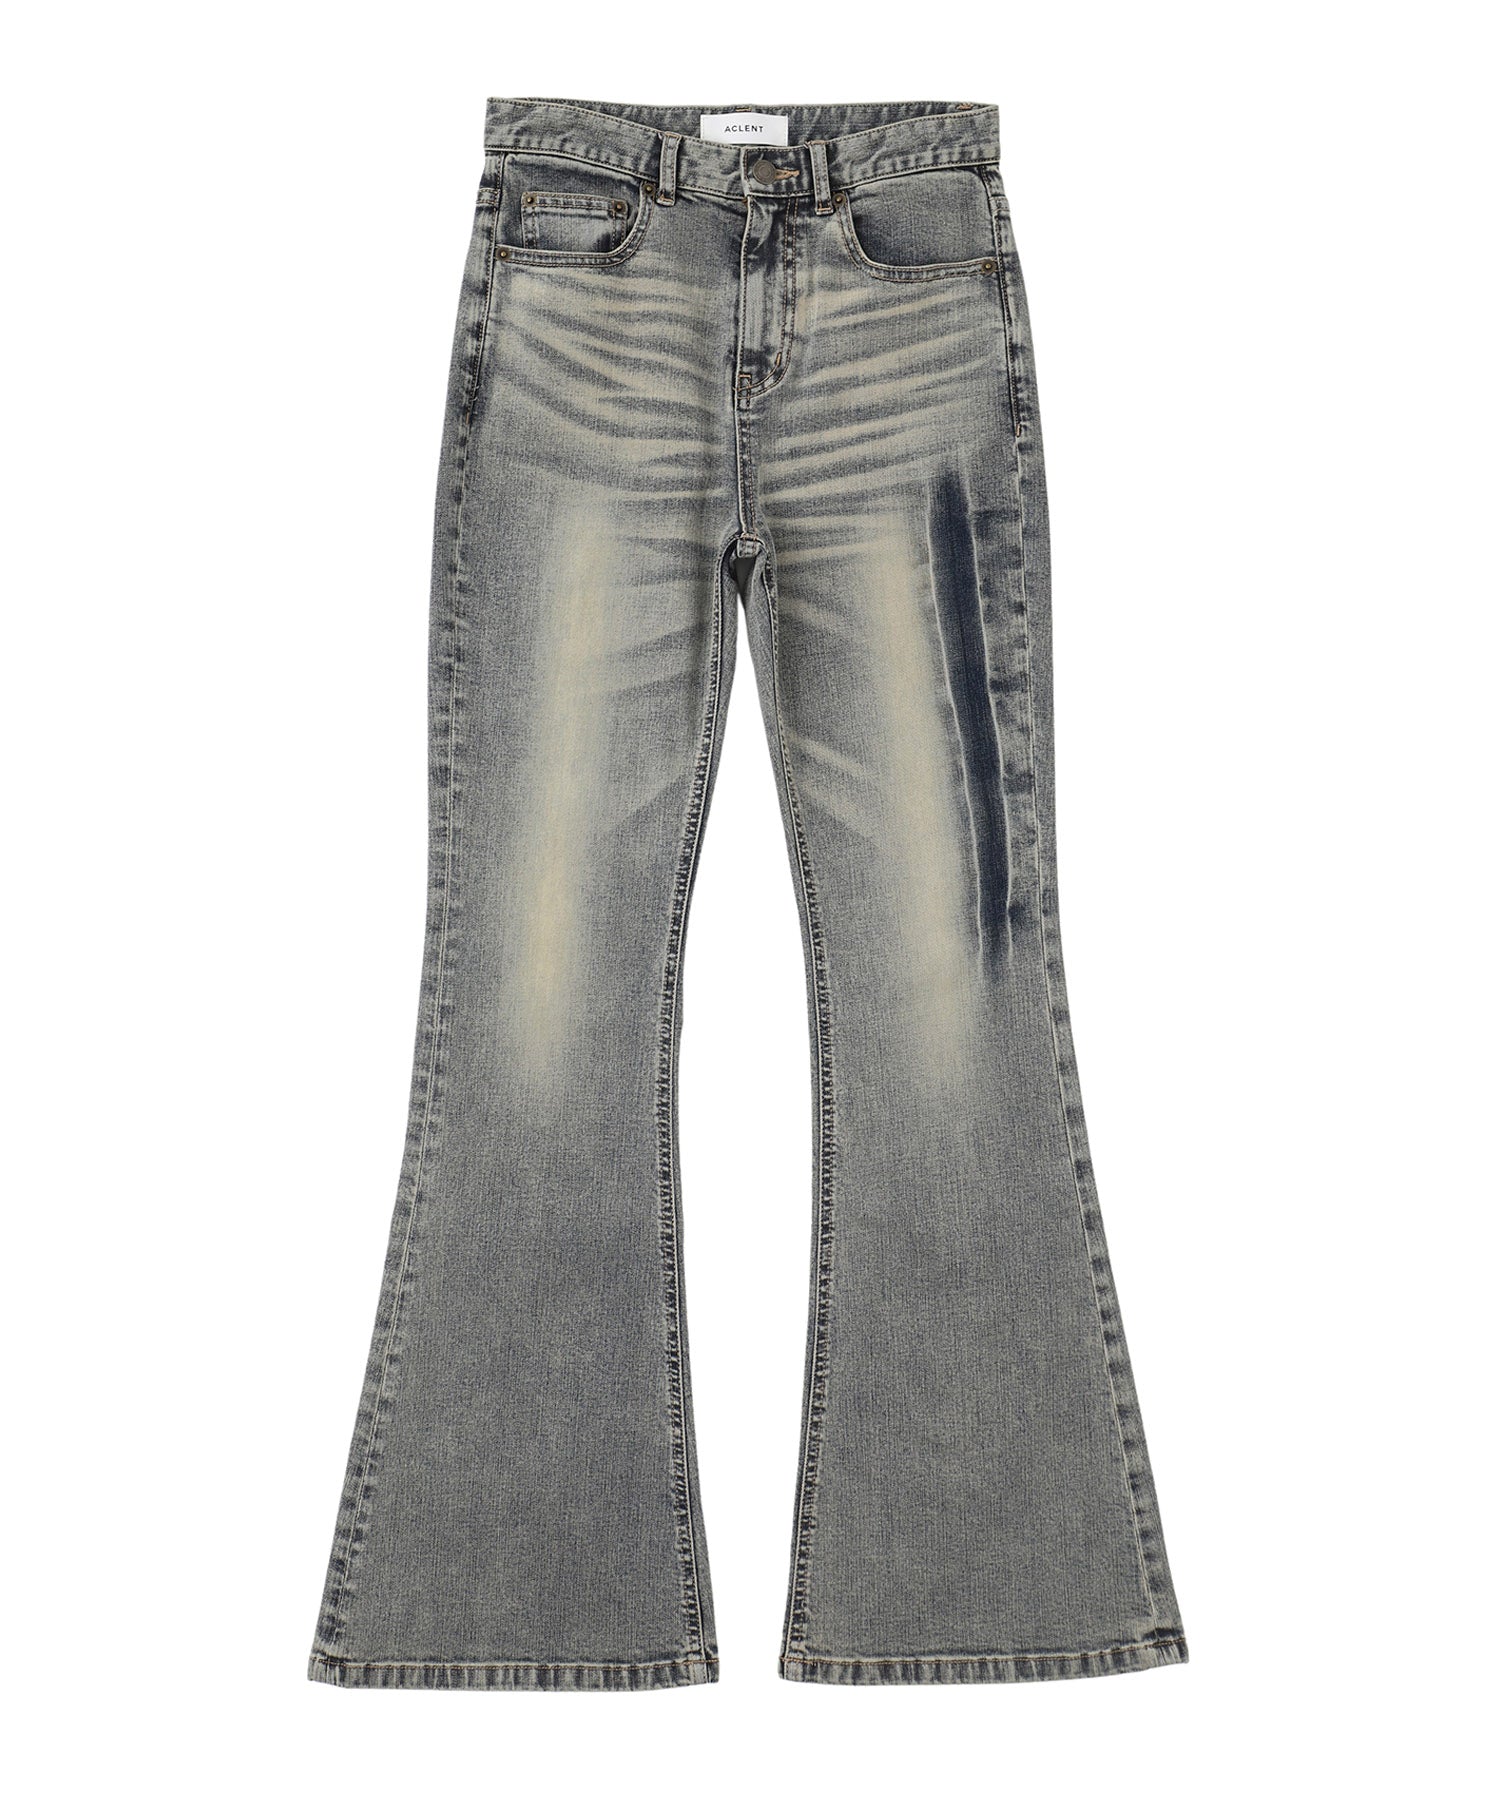 Vintage wash flare jeans